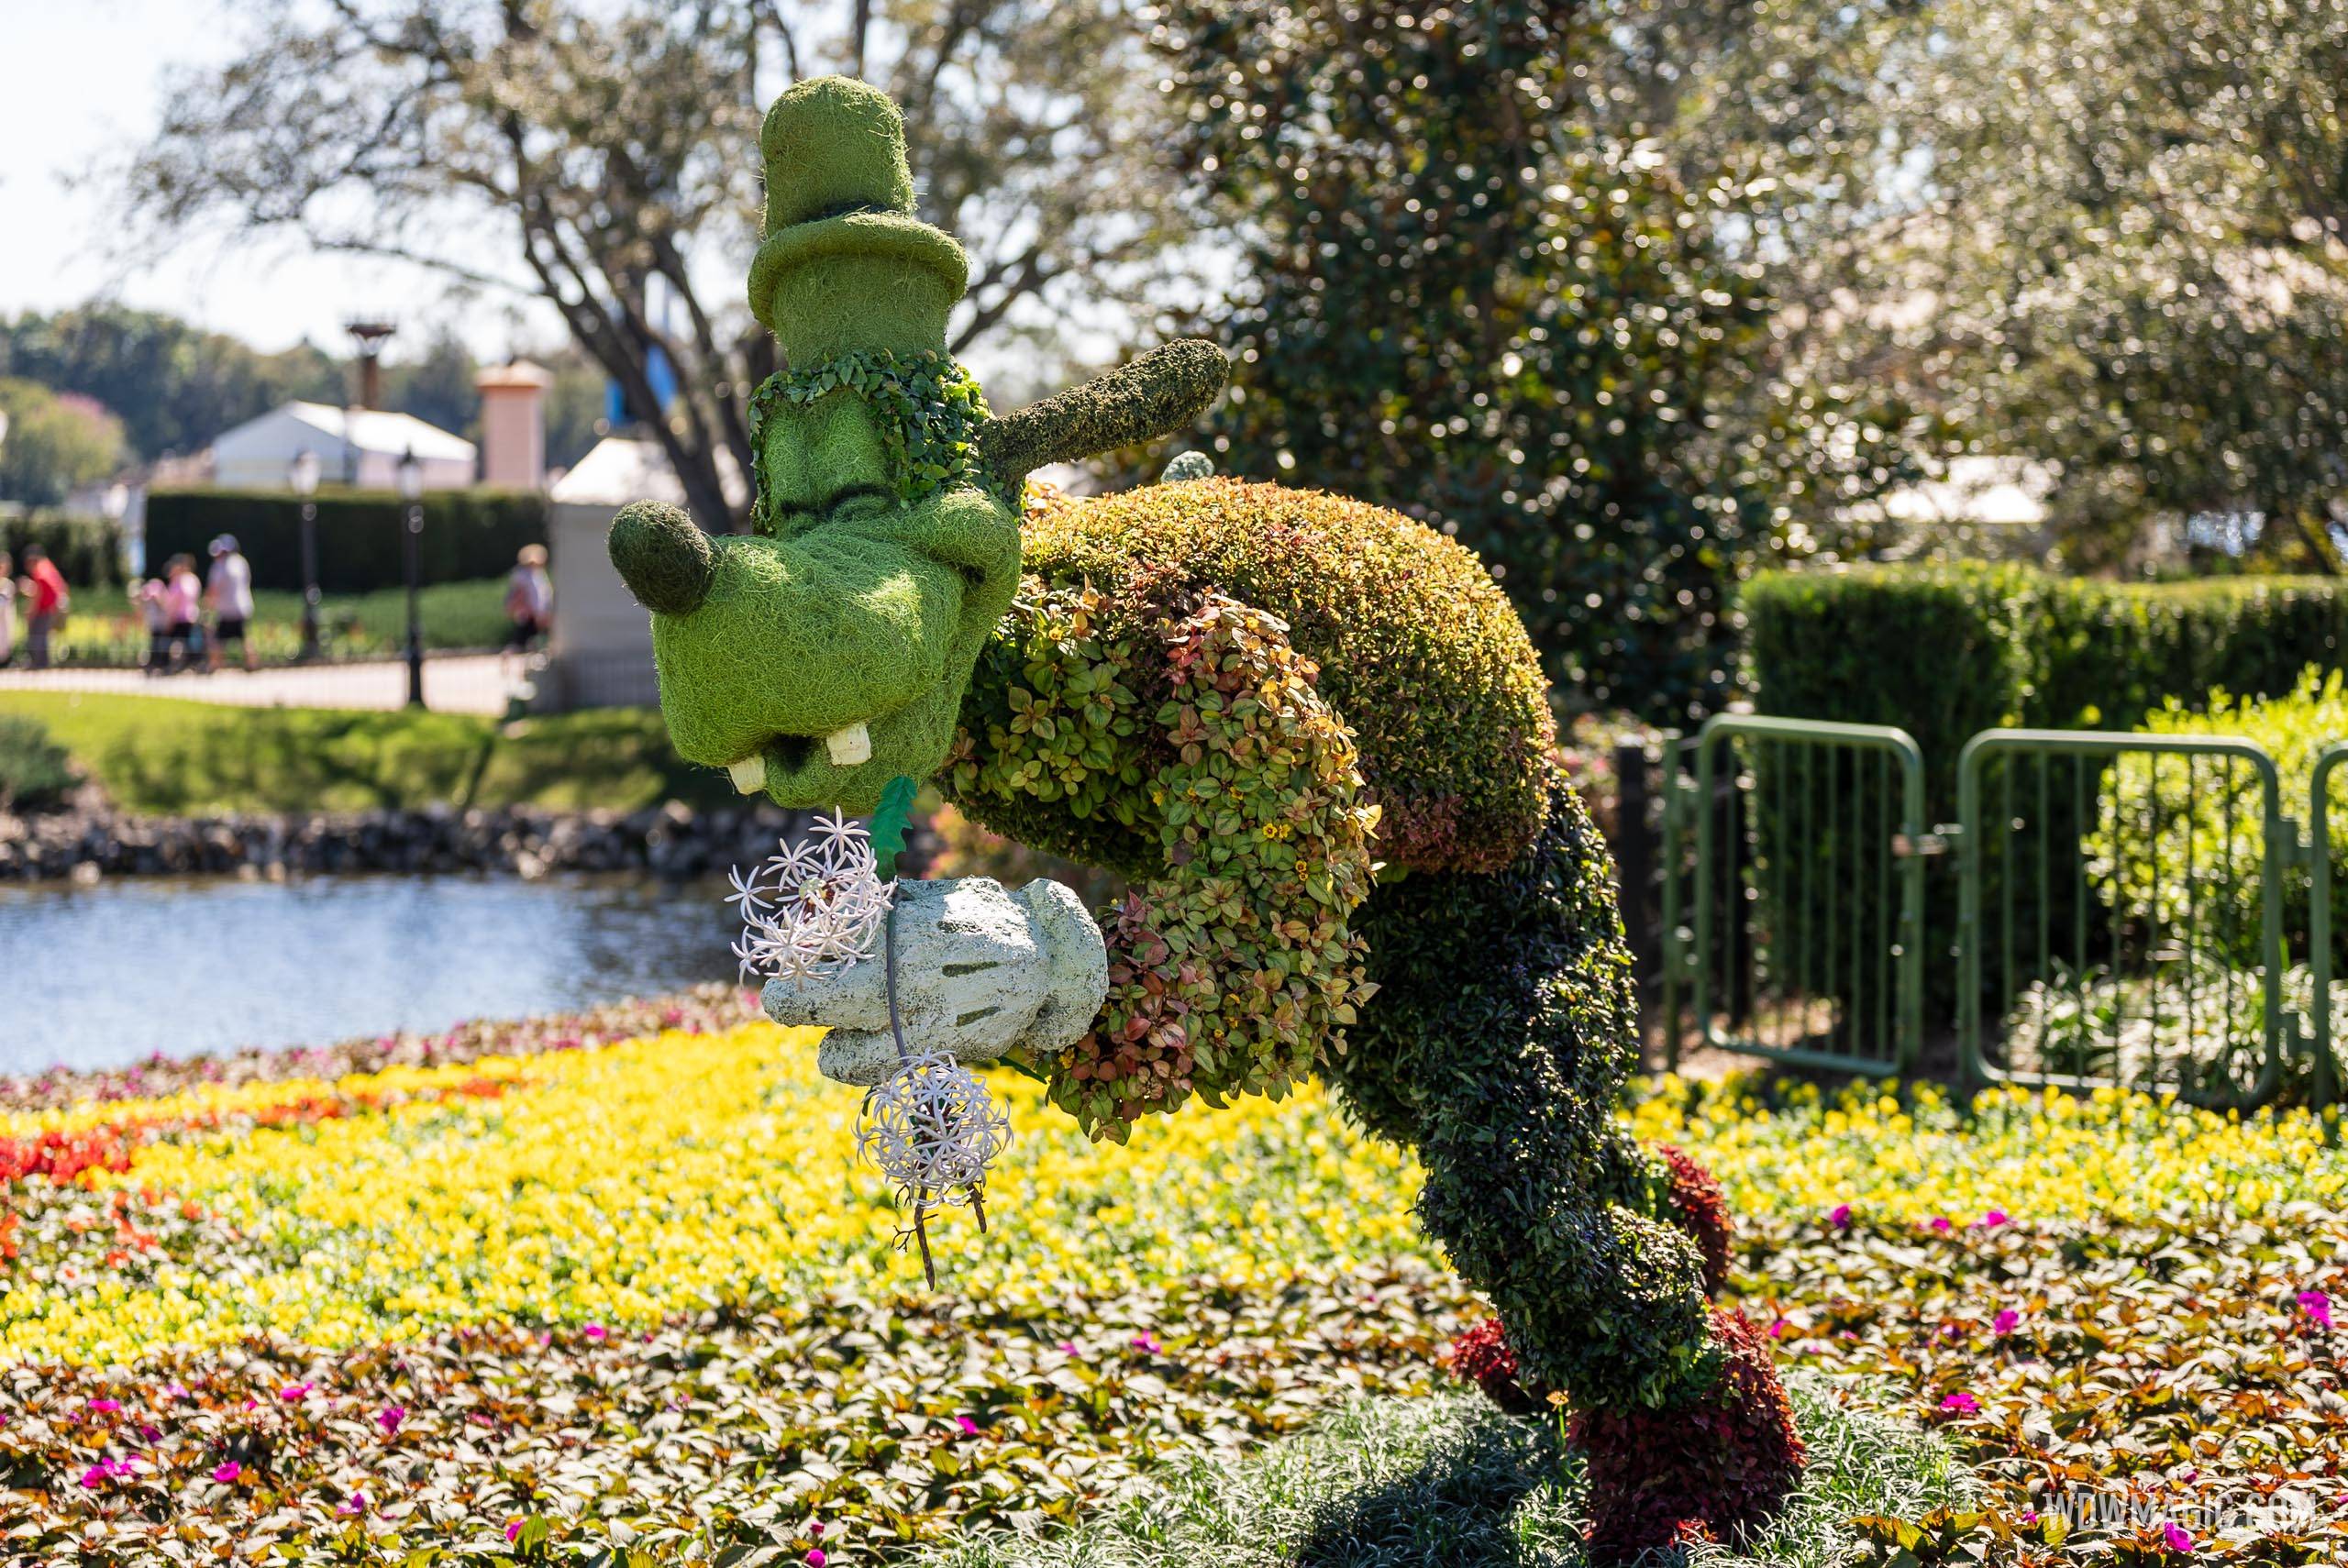 Goofy topiary